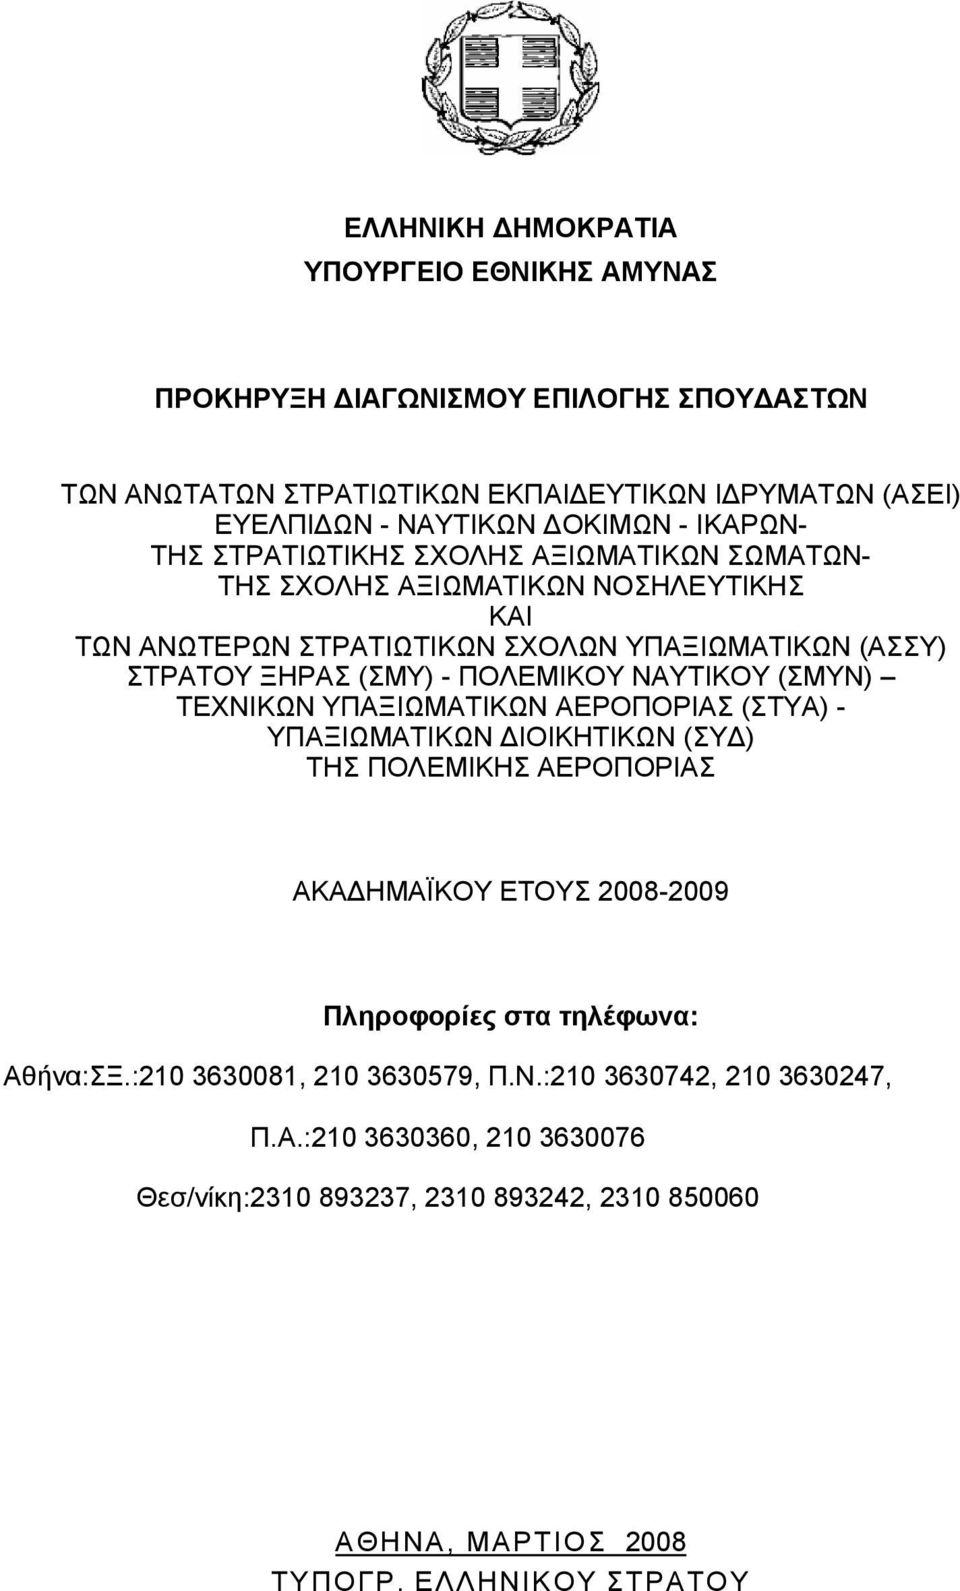 ΝΑΥΤΙΚΟΥ (ΣΜΥΝ) ΤΕΧΝΙΚΩΝ ΥΠΑΞΙΩΜΑΤΙΚΩΝ ΑΕΡΟΠΟΡΙΑΣ (ΣΤΥΑ) - ΥΠΑΞΙΩΜΑΤΙΚΩΝ ΔΙΟΙΚΗΤΙΚΩΝ (ΣΥΔ) ΤΗΣ ΠΟΛΕΜΙΚΗΣ ΑΕΡΟΠΟΡΙΑΣ ΑΚΑΔΗΜΑΪΚΟΥ ΕΤΟΥΣ 2008-2009 Πληροφορίες στα τηλέφωνα: Αθήνα:ΣΞ.